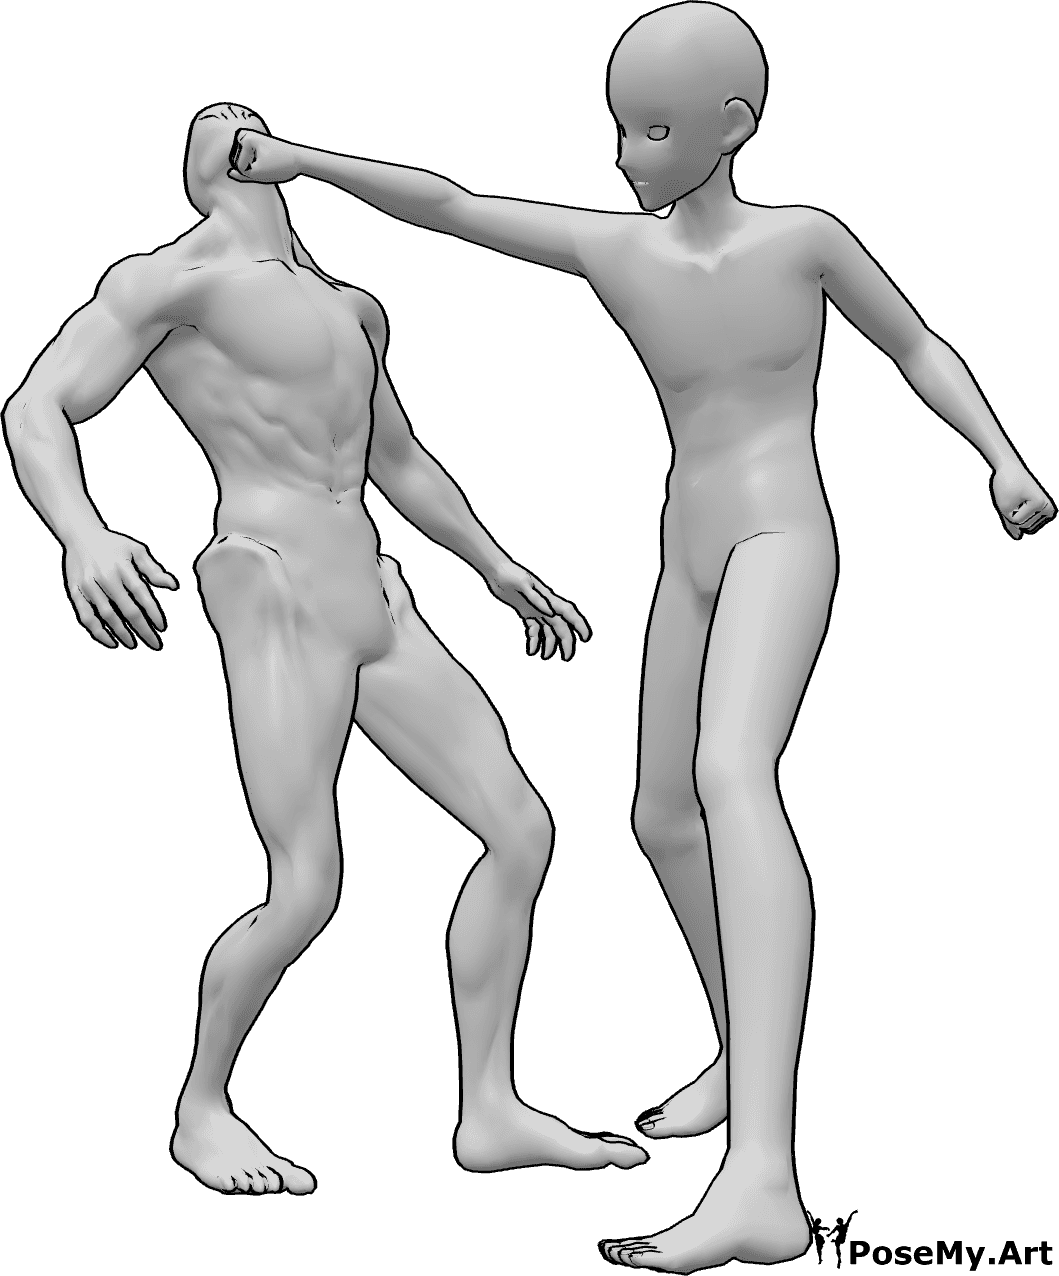 Référence des poses- Anime male punch pose - L'homme animé frappe l'ennemi à la tête avec sa main droite.